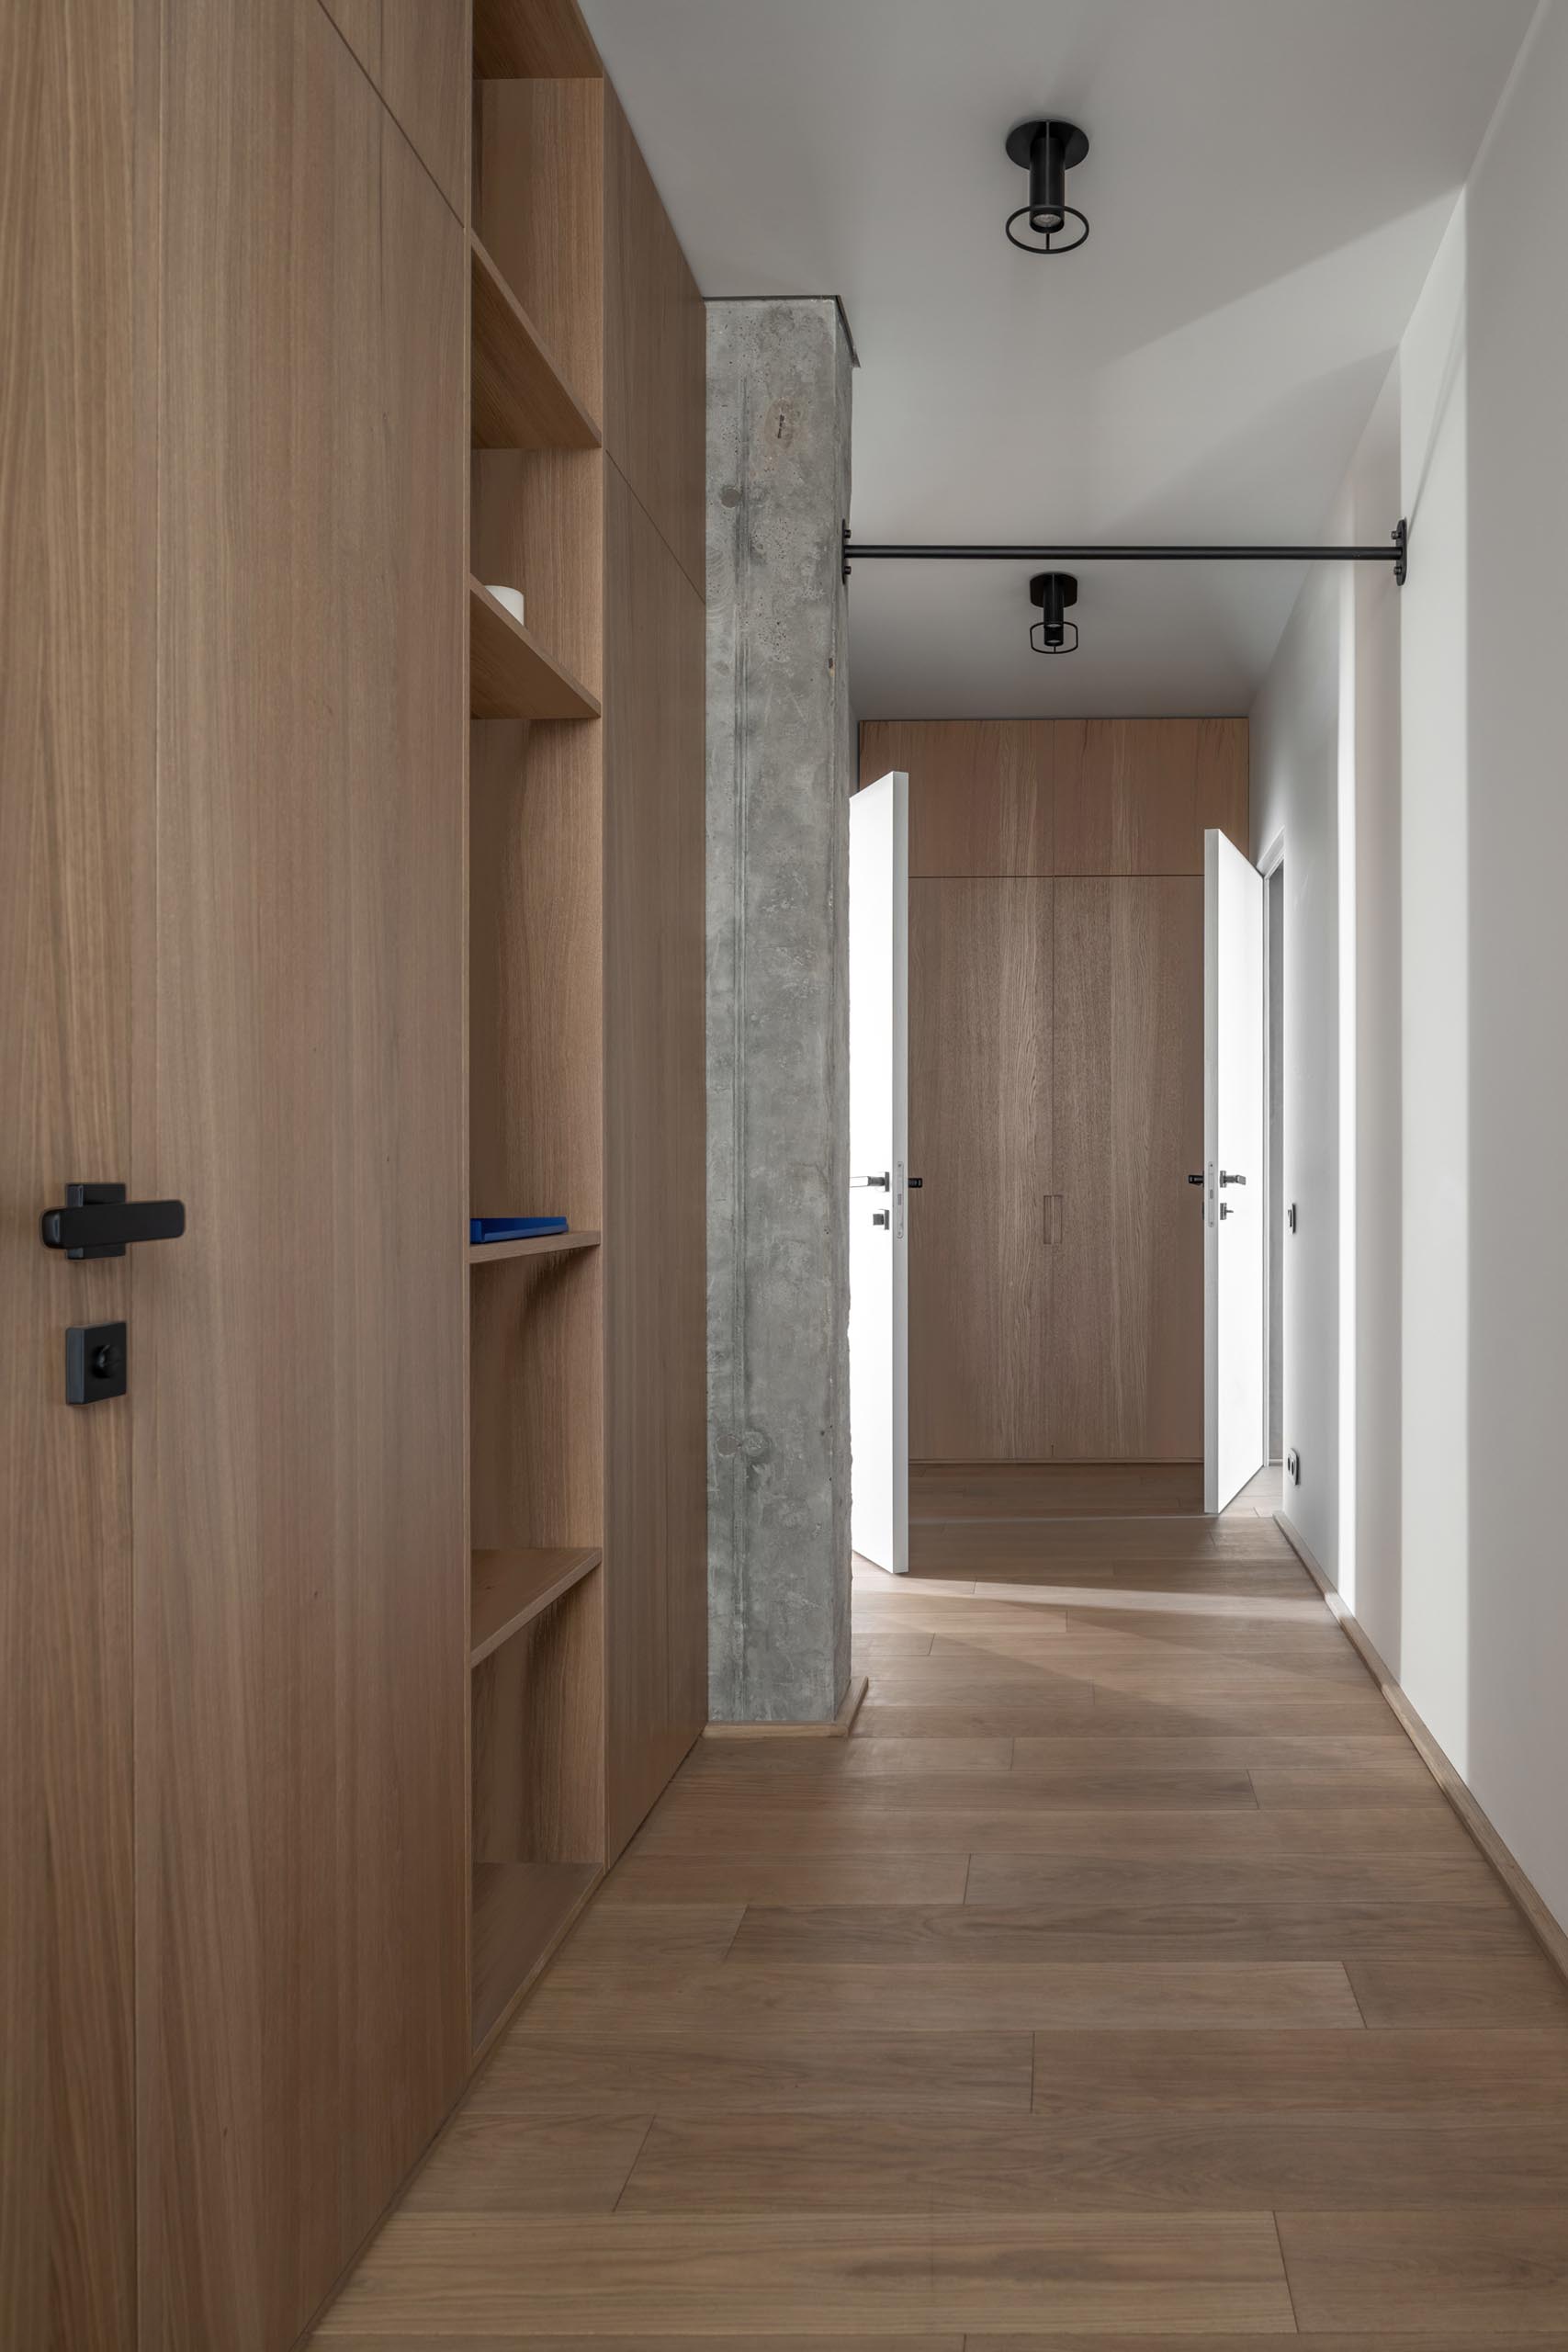 Прихожая с деревянными шкафами обеспечивает дополнительную кладовую в современной квартире.